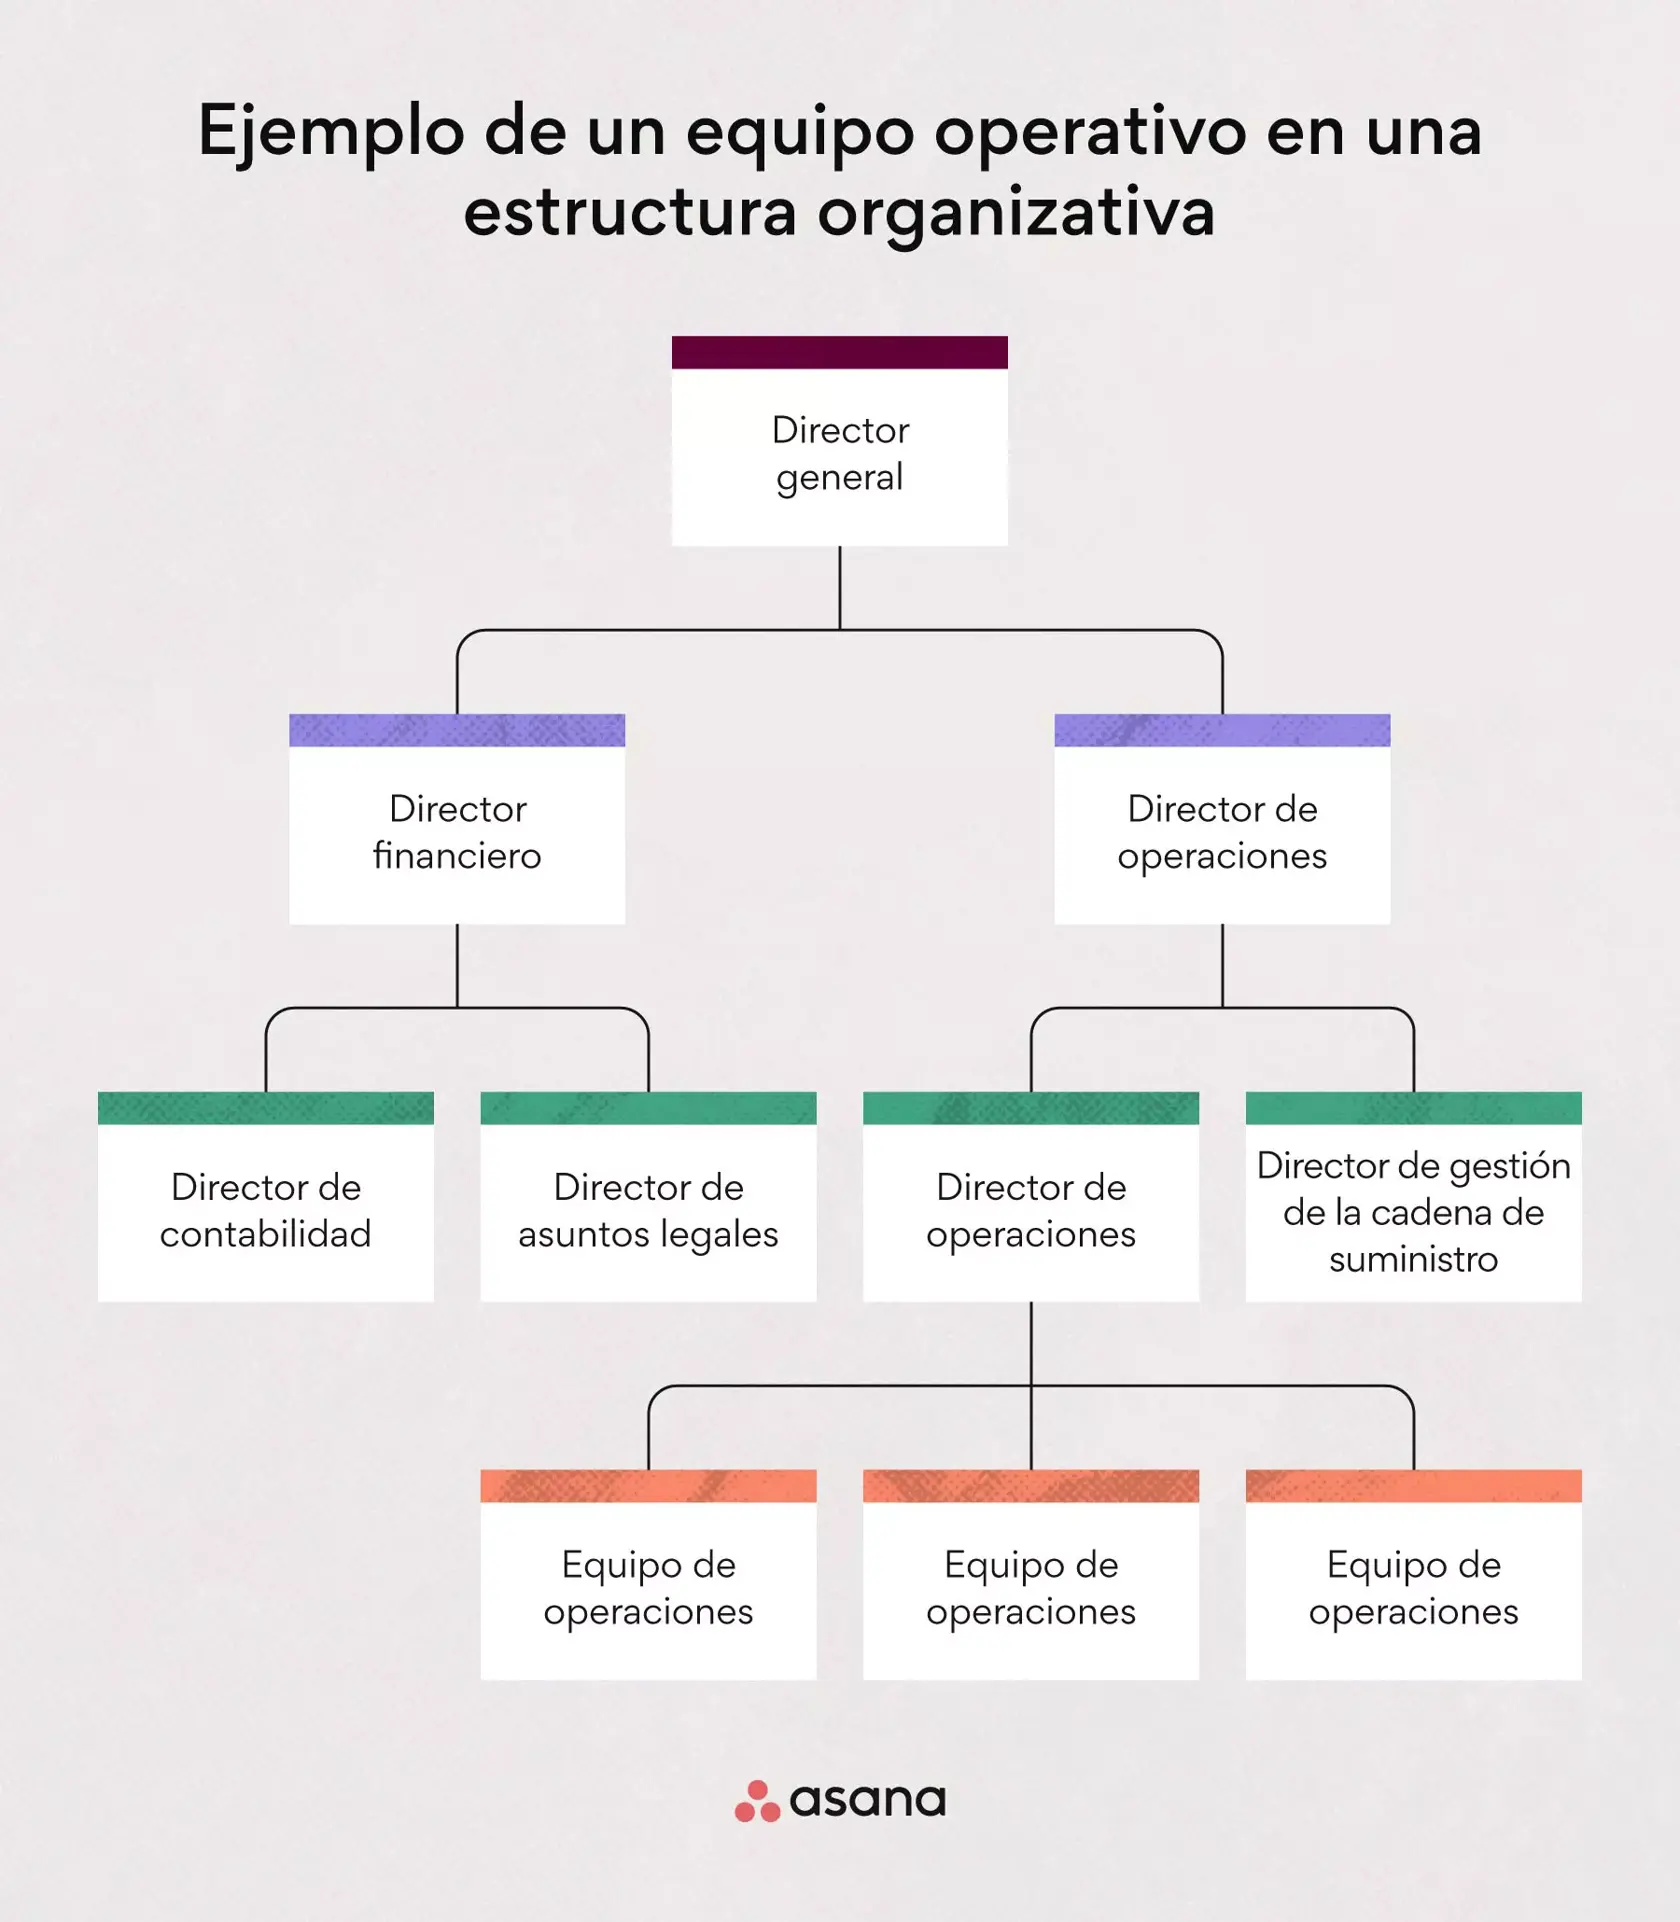 Ejemplo de un equipo operativo en una estructura organizativa